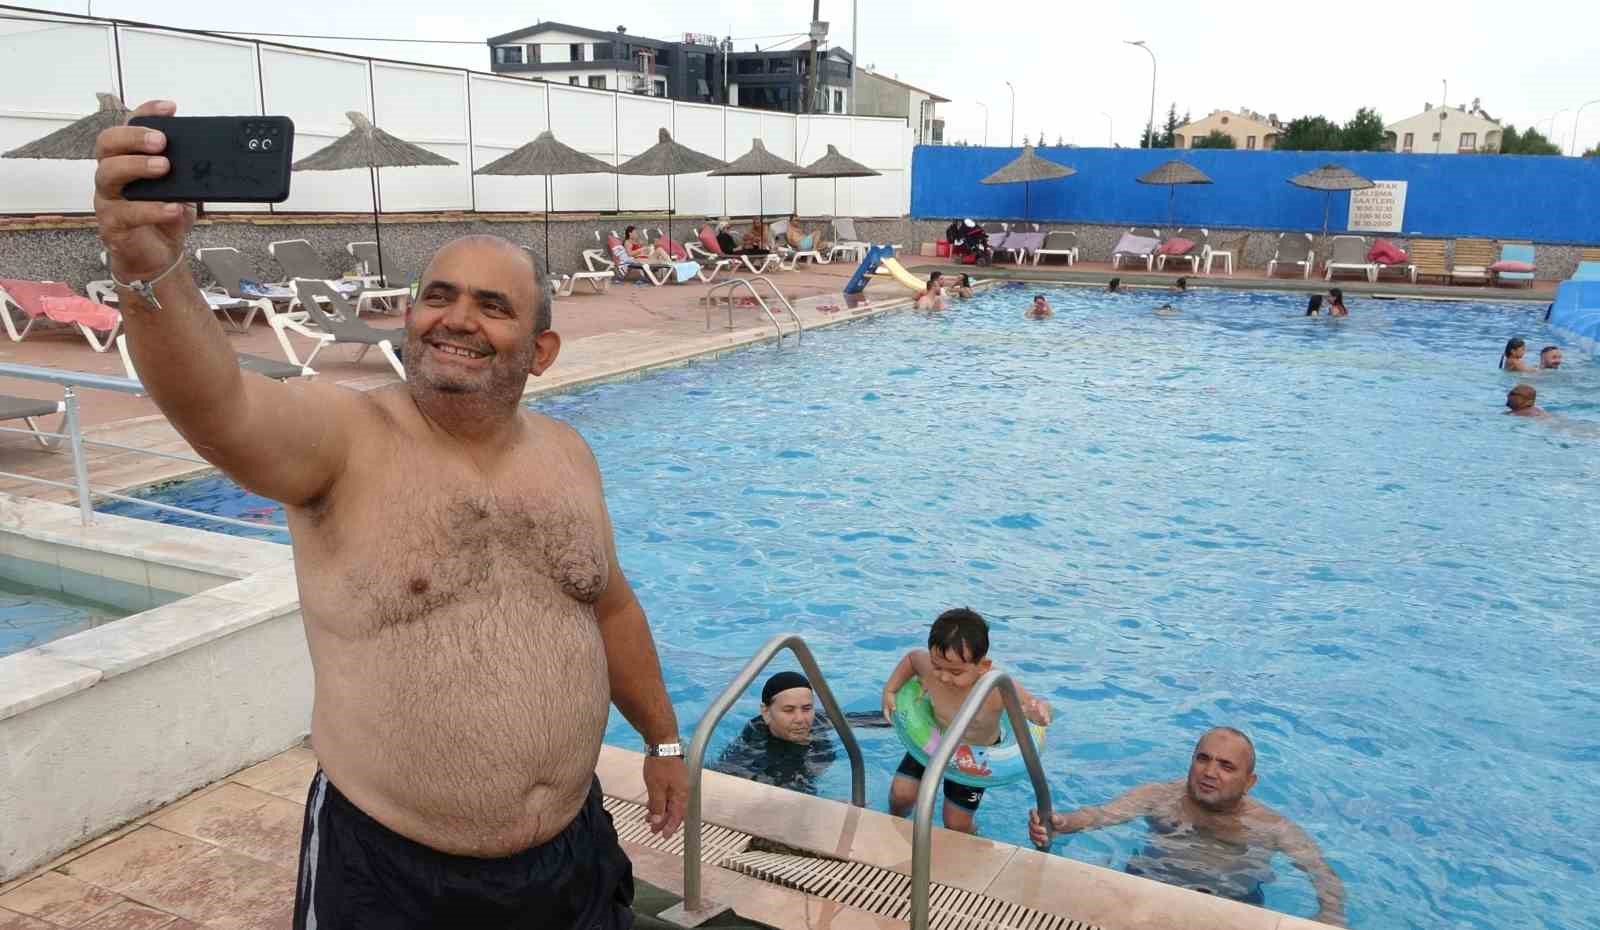 (ÖZEL) Sıcaktan bunalan vatandaşlar termal havuzlara koşuyor